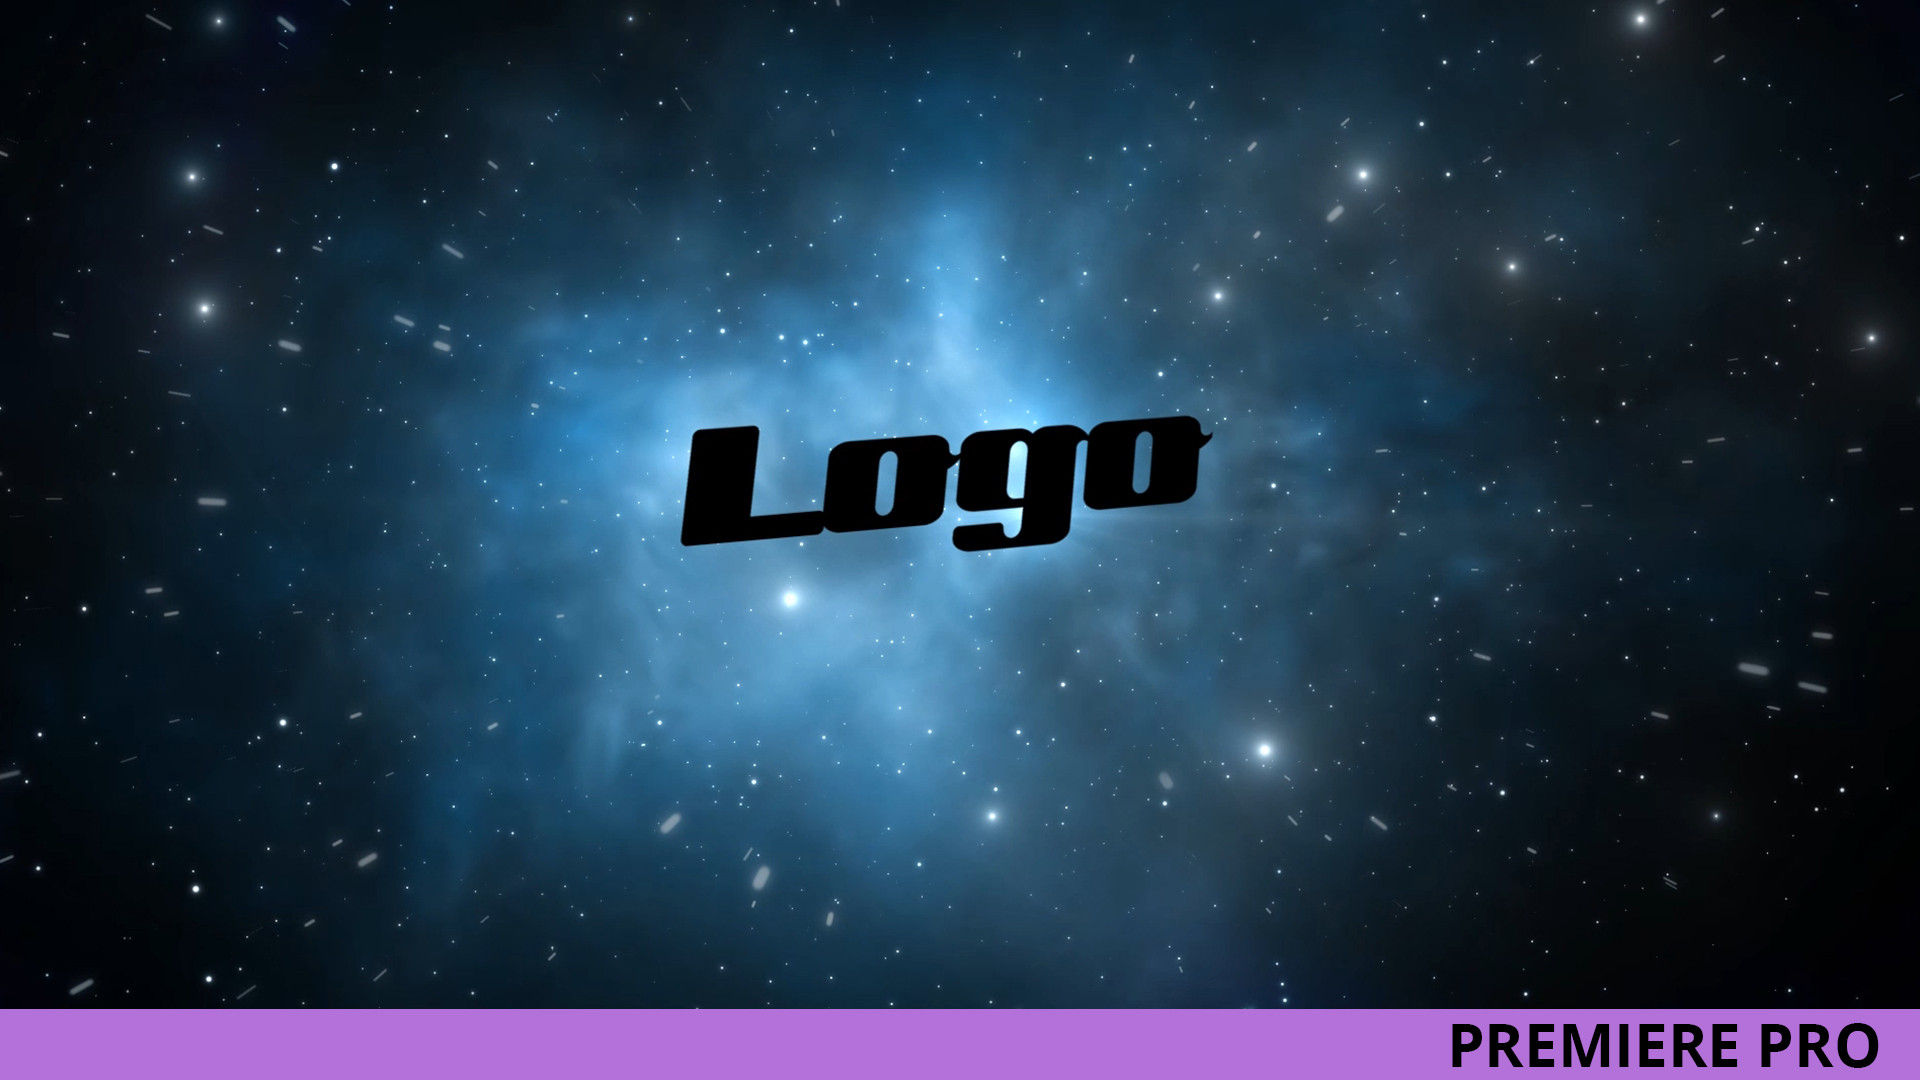 银河系太空标志LOGO展示16设计素材网推荐PR模板